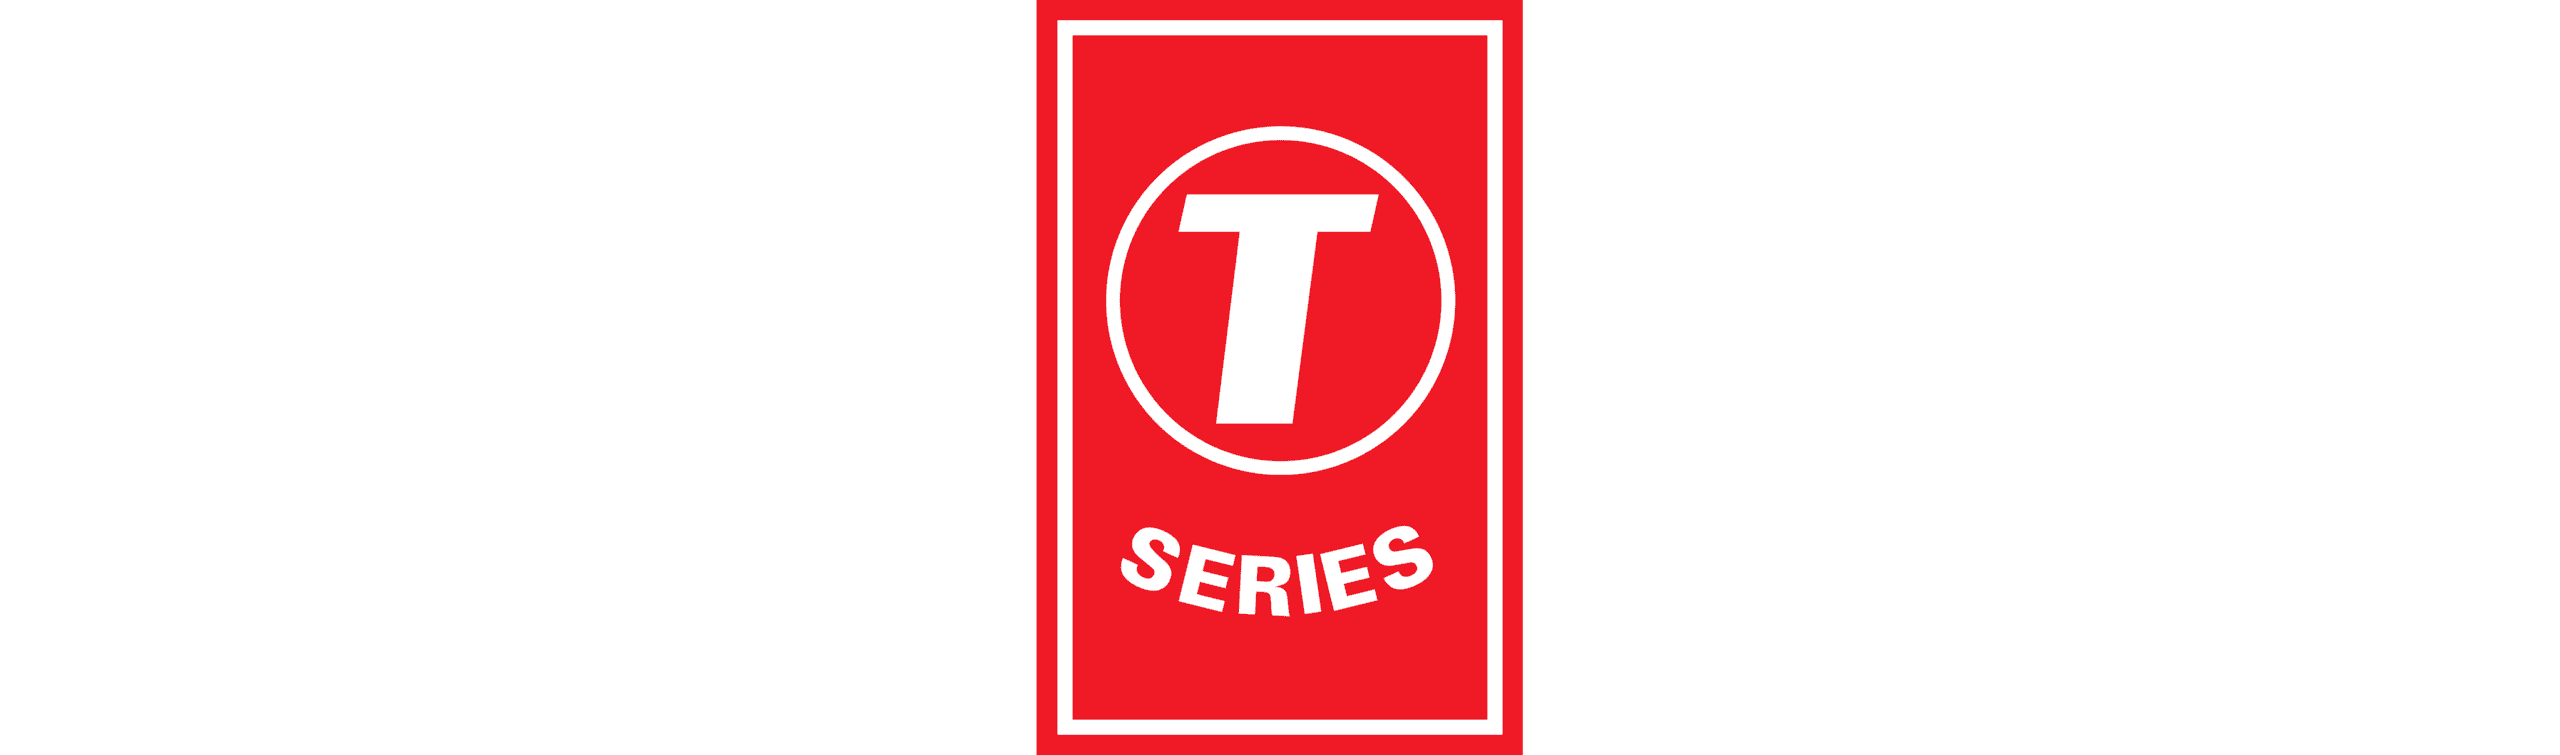 T-Series logo